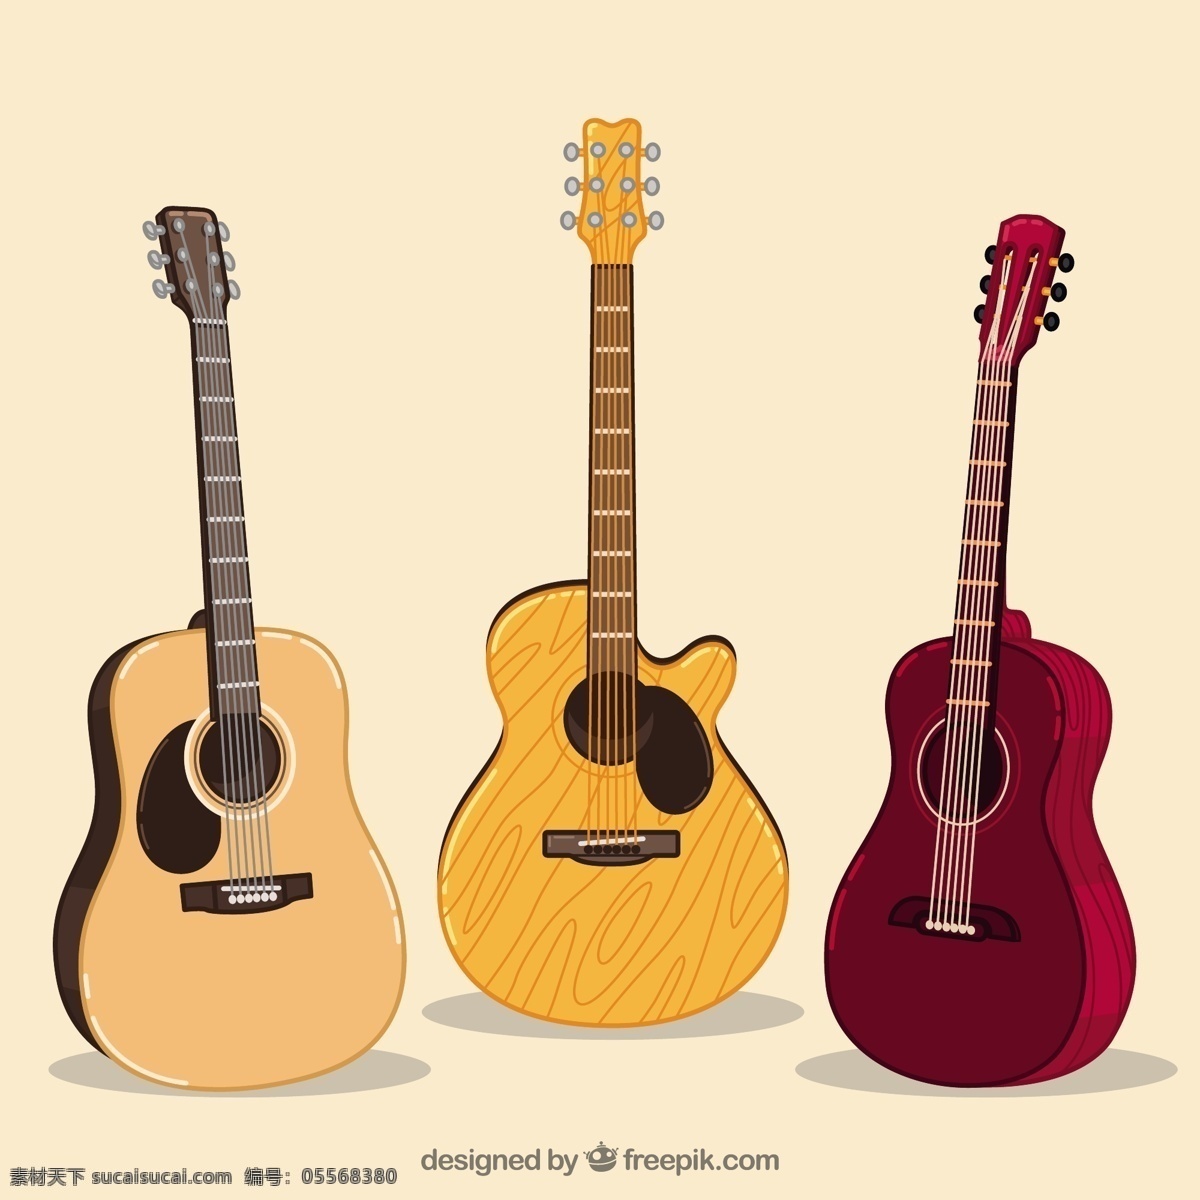 手绘 三 种 吉他 插图 背景 三种 吉他插图